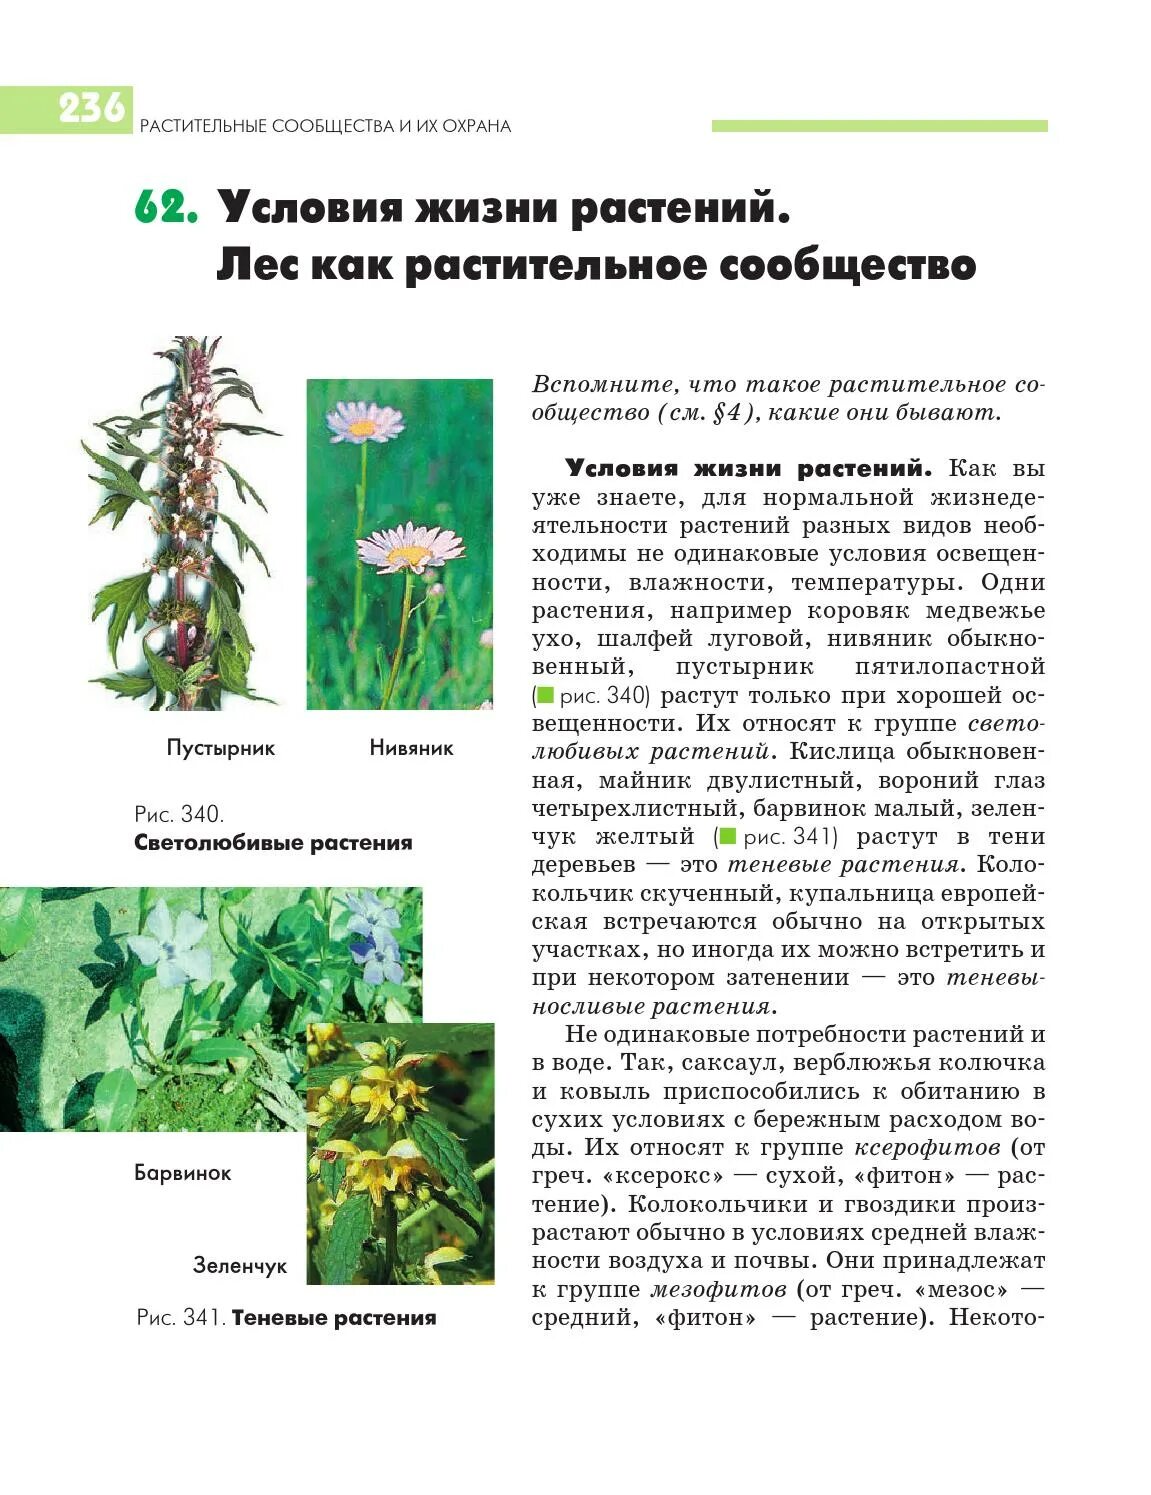 Жизнь растений в 6. Растительные сообщества условия растения. Условия жизни растений сообщества. Кислица растительное сообщество. Растения лесного сообщества.